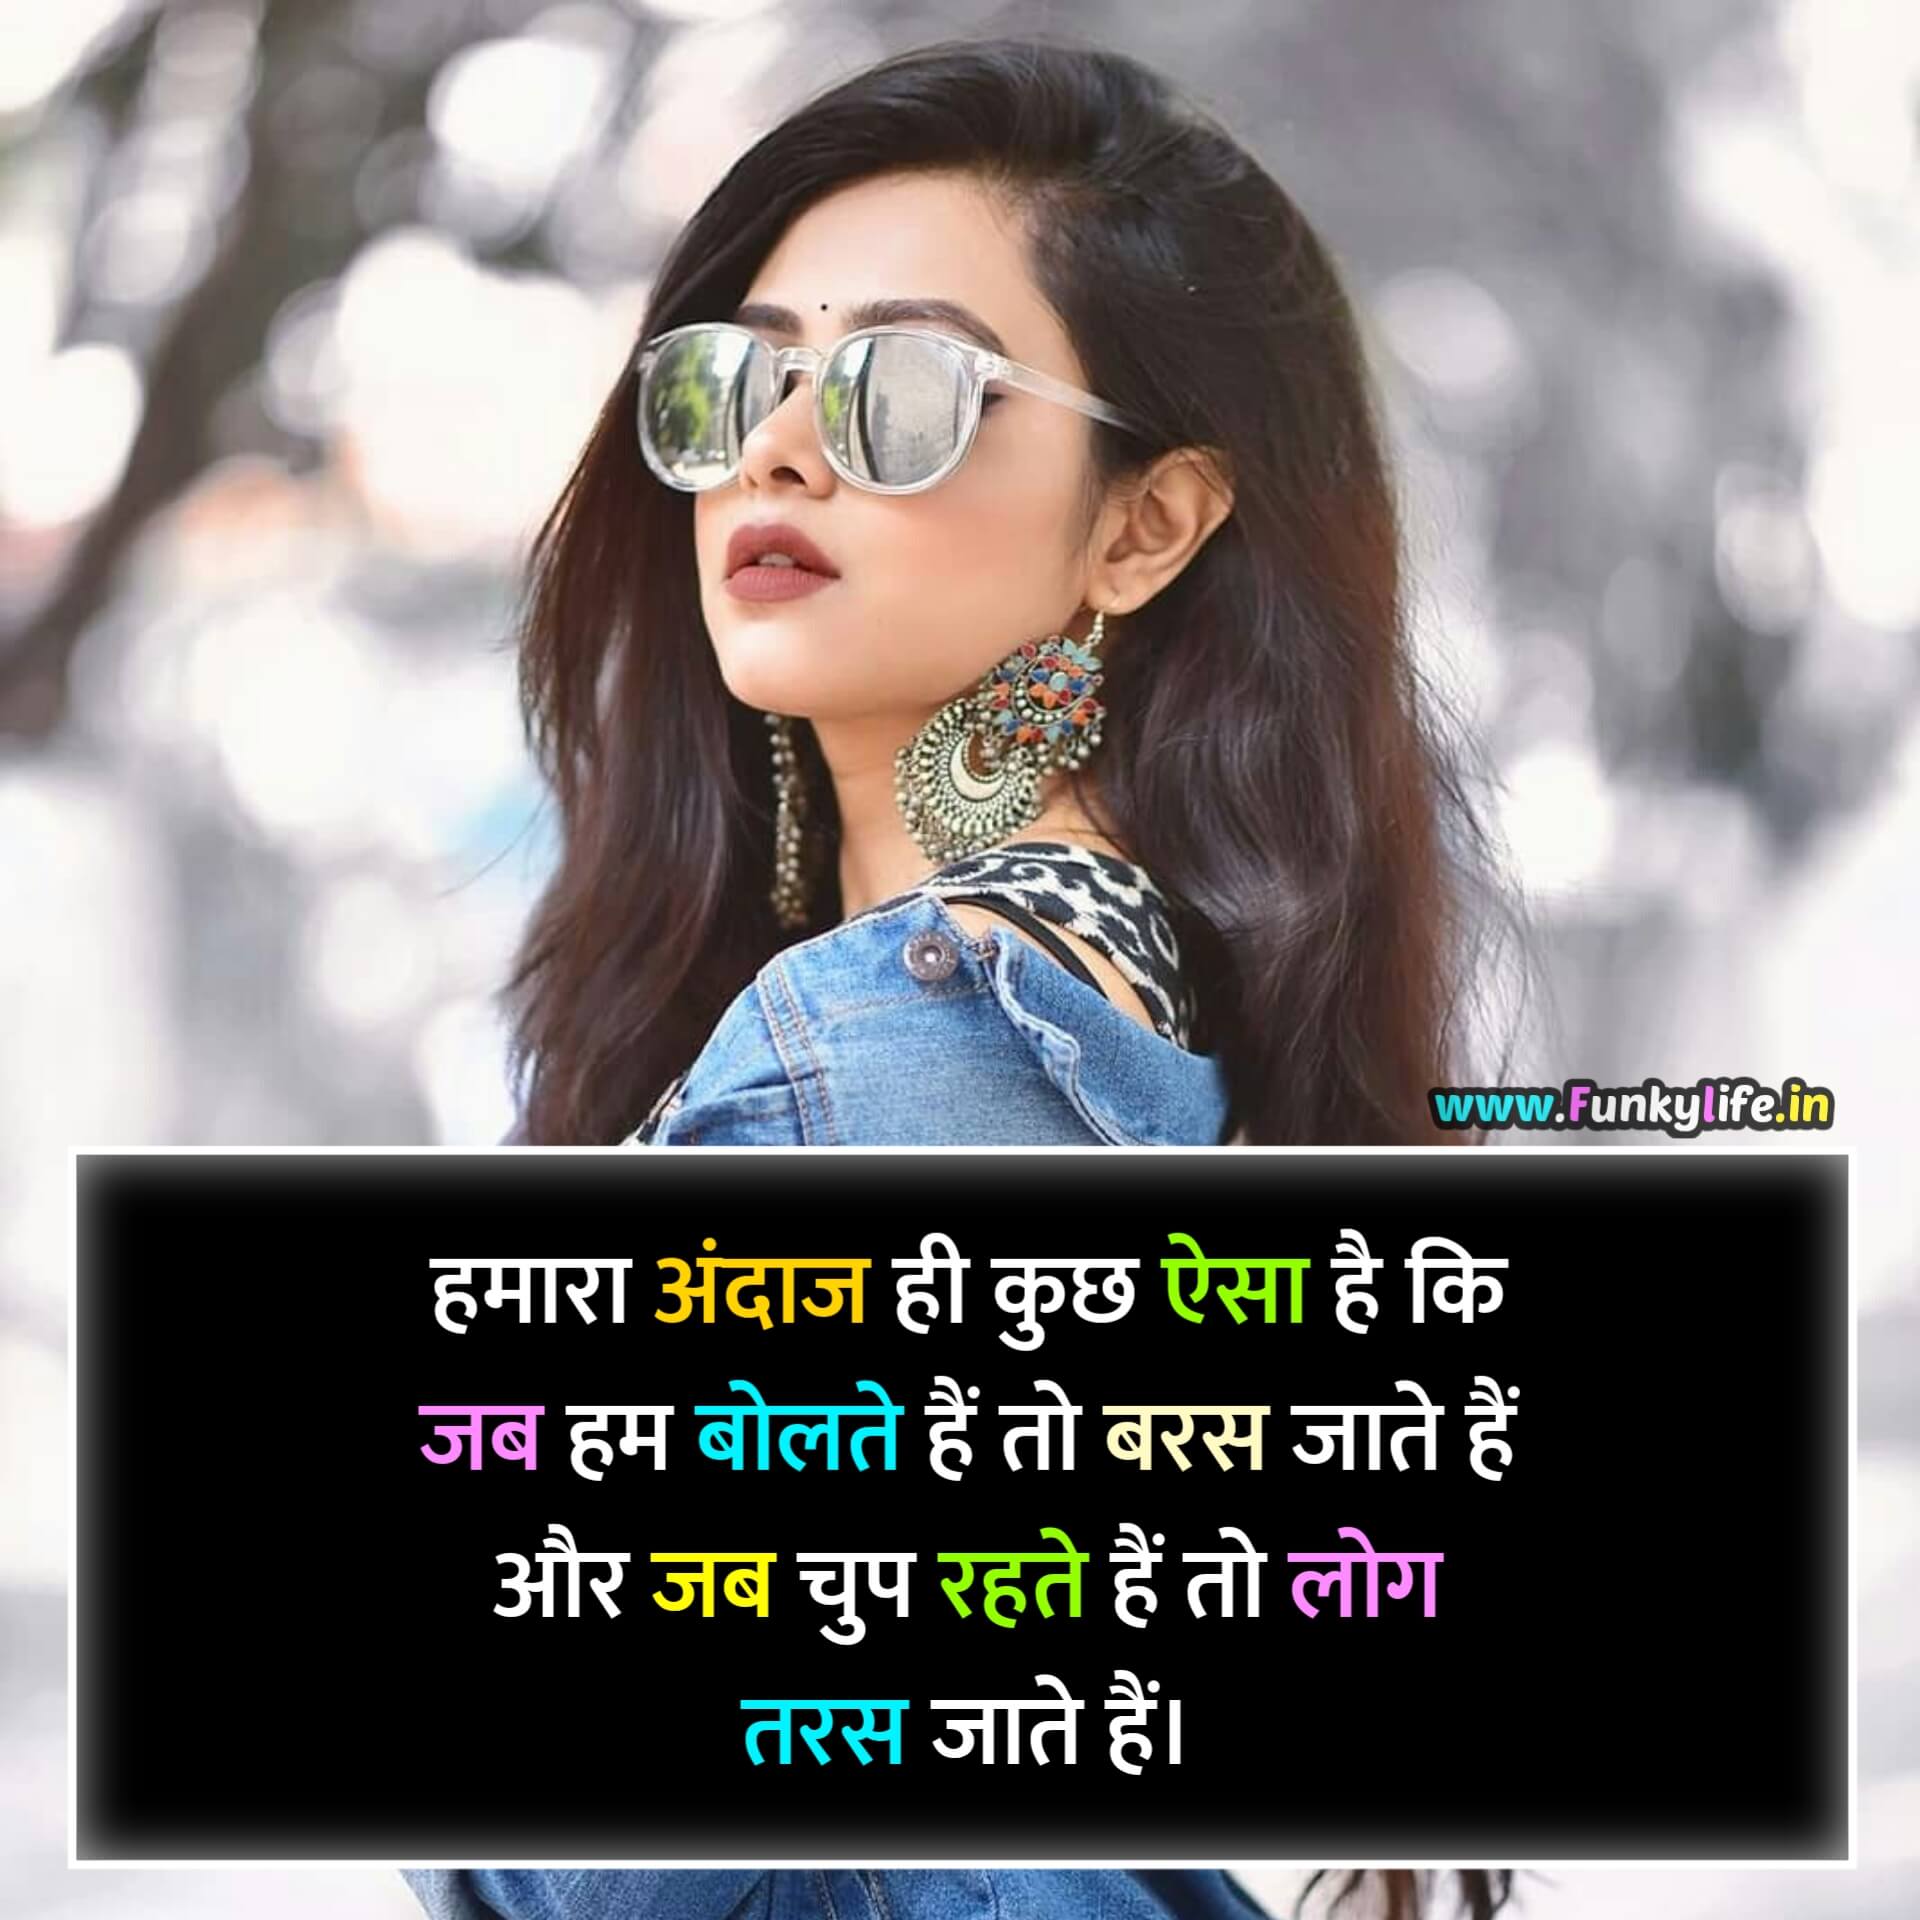 Girls Attitude Shayari in Hindi